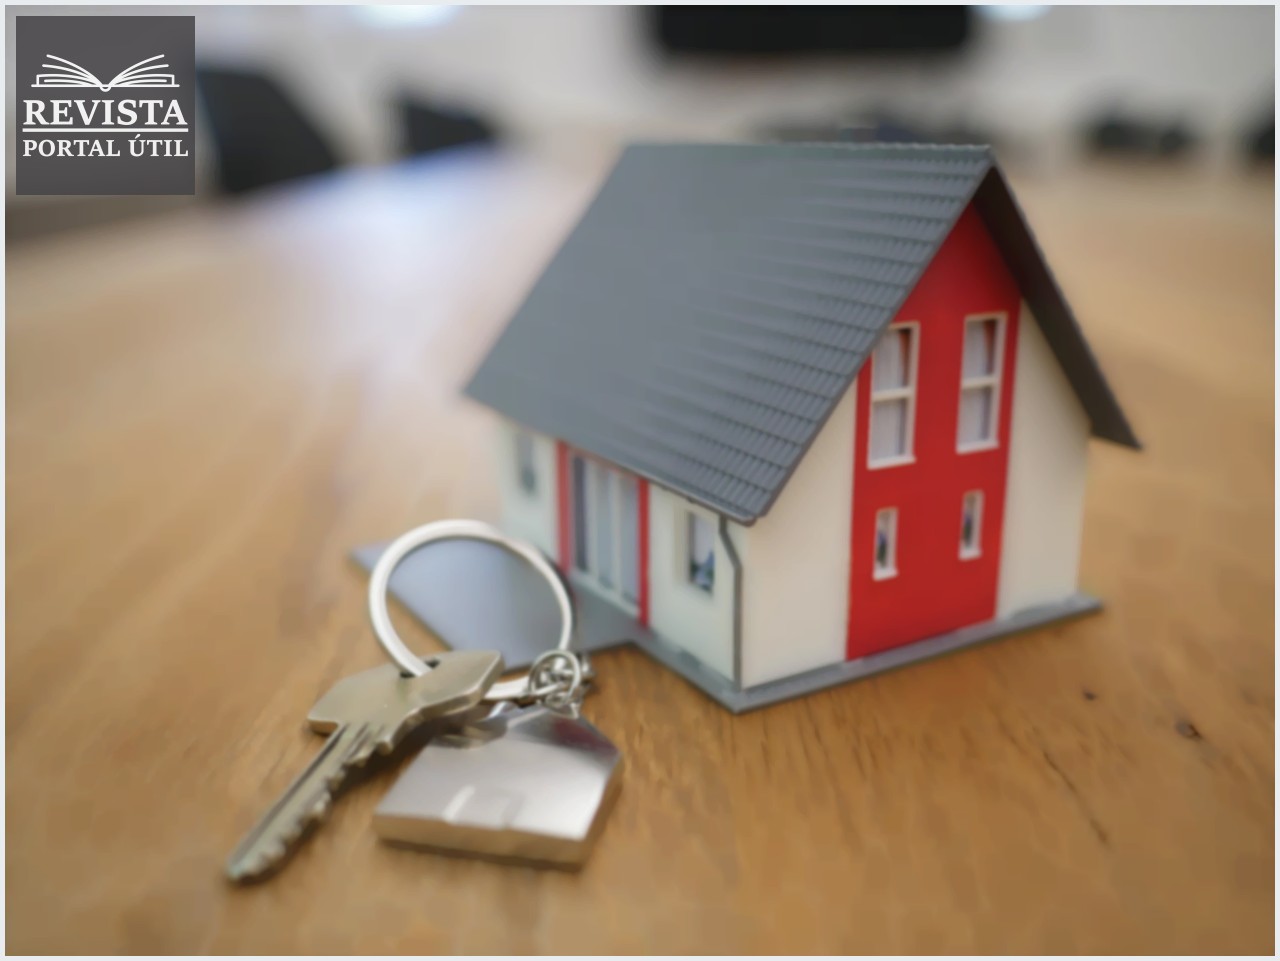 Como funciona o refinanciamento imobiliário?